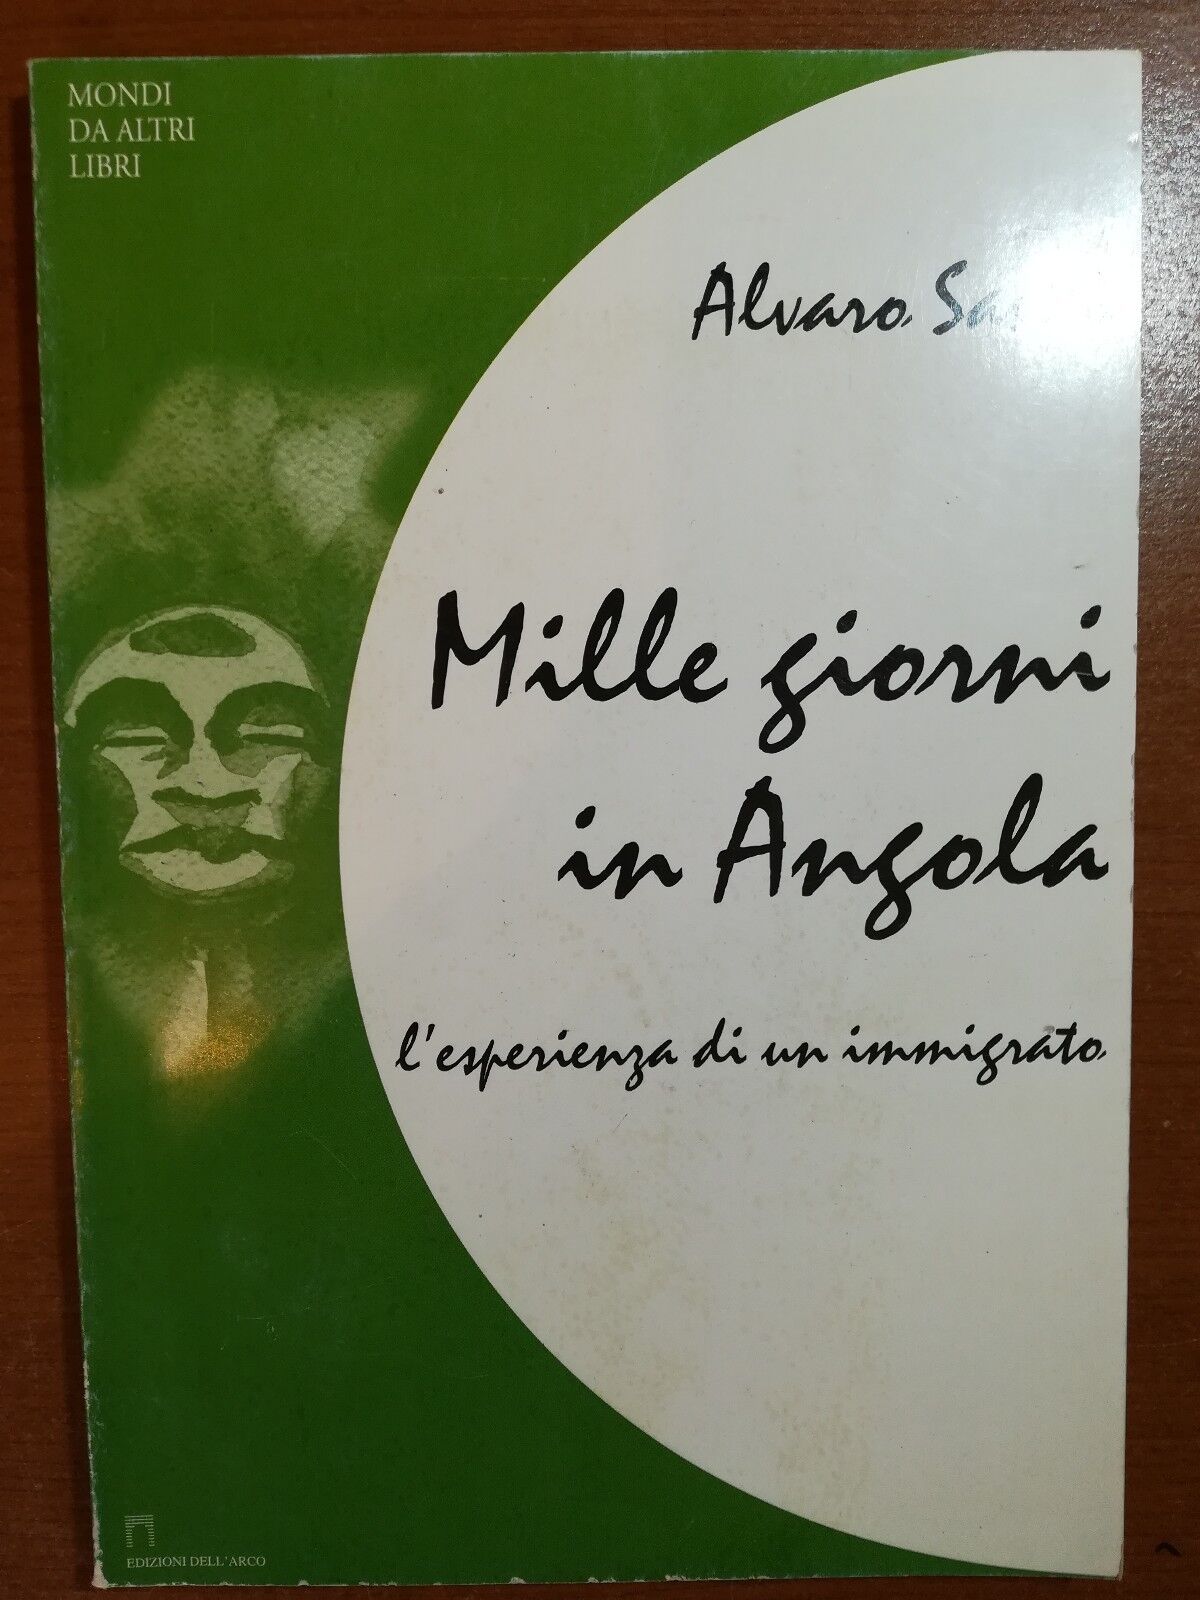 Mille giorni in angola - Alvaro Santo - Dell'arco - 2000 - M